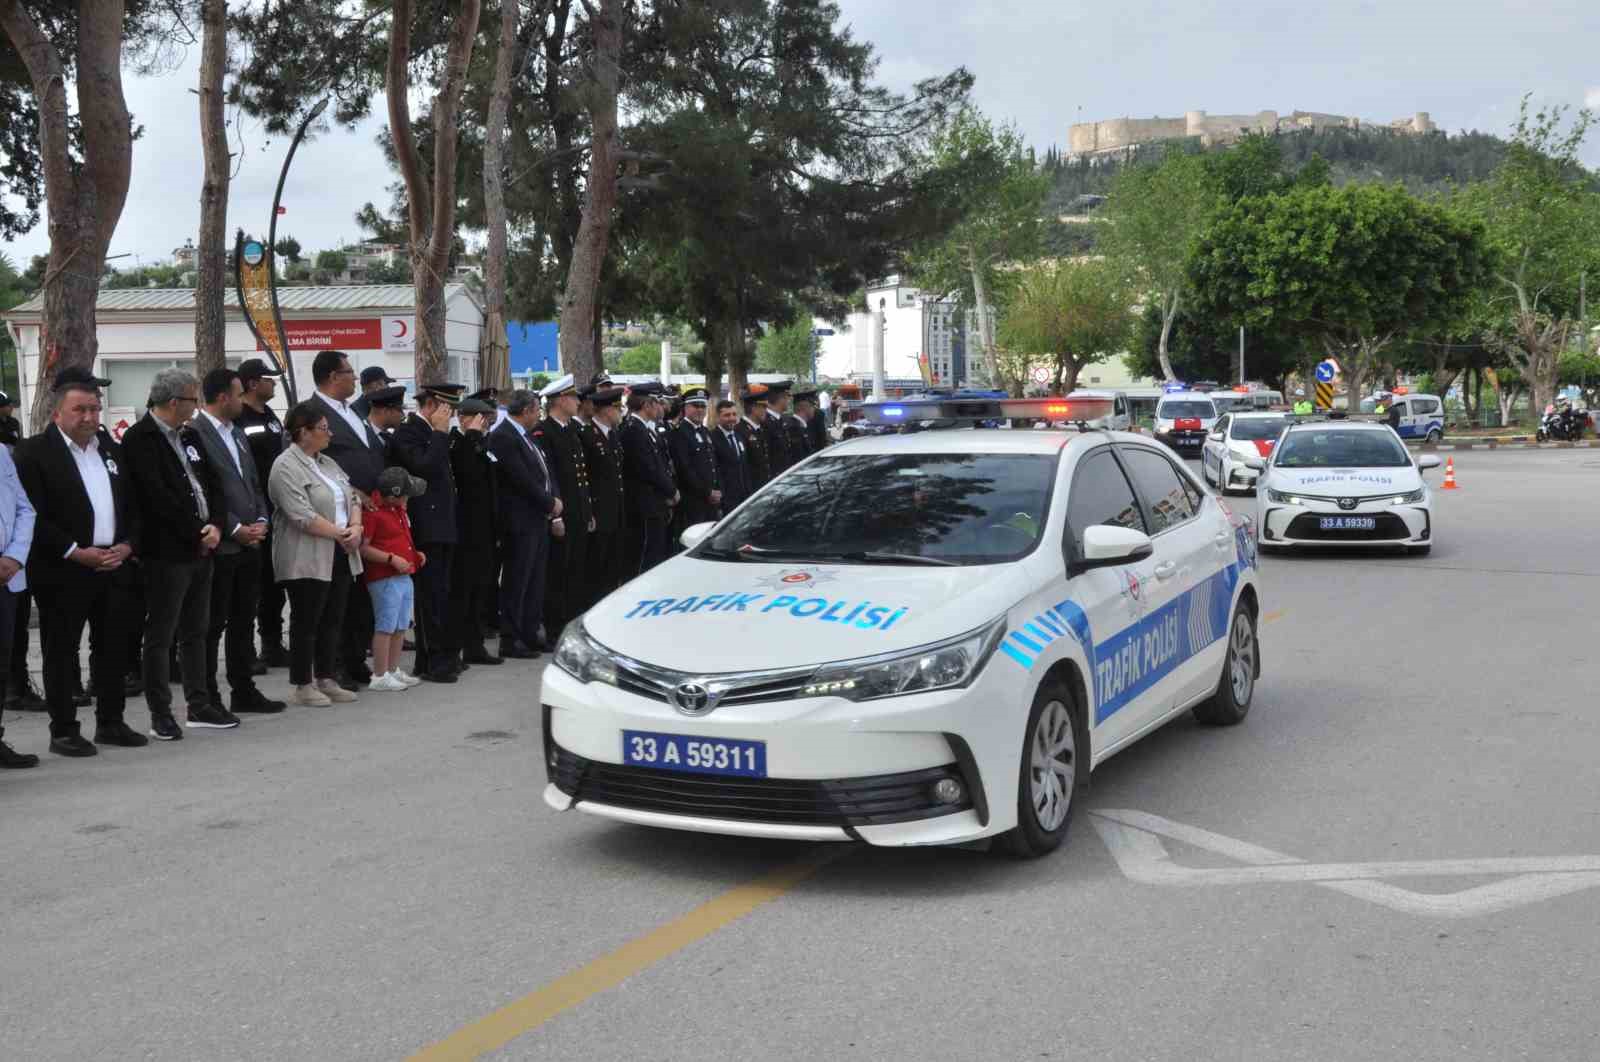 Silifke’de Türk Polis Teşkilatının kuruluşunun 179. yıl dönümü kutlandı
